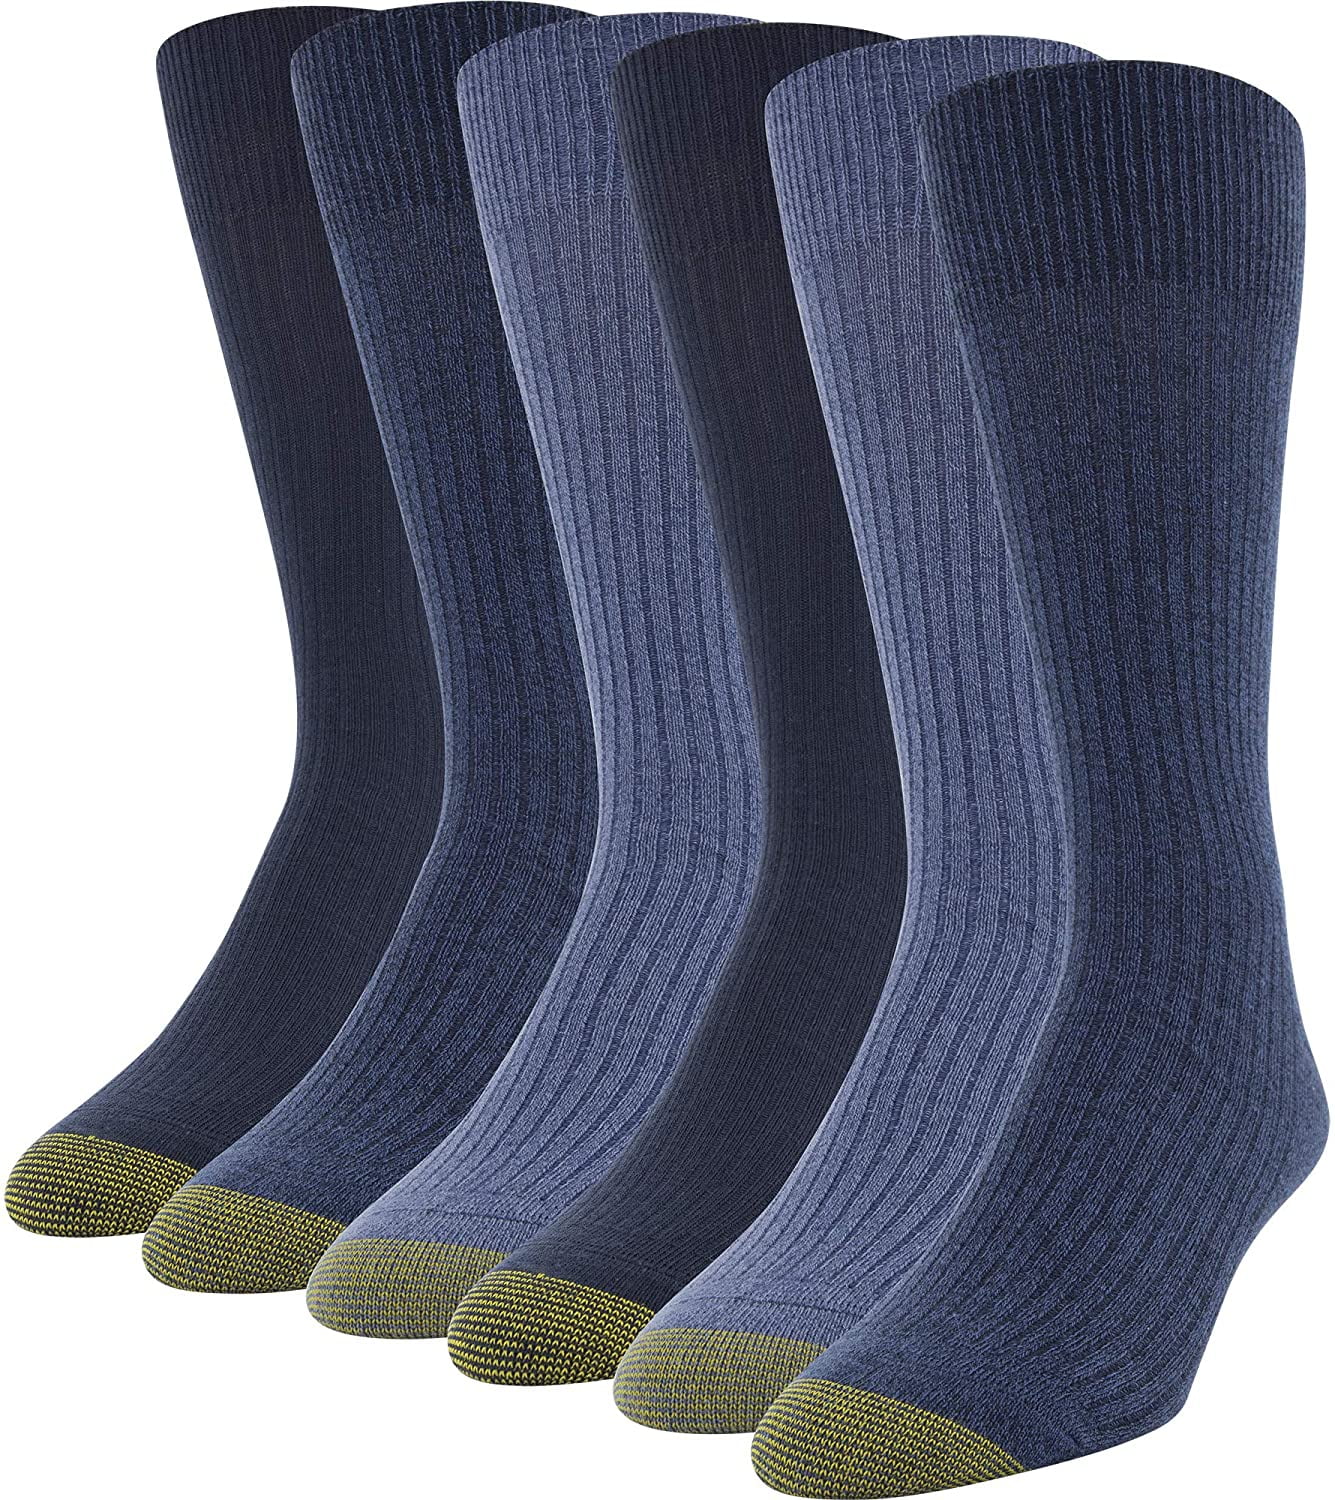 Gold Toe Men's Black Cotton No Show Athletic Sock 6 pair men's shoe Size 5-9 